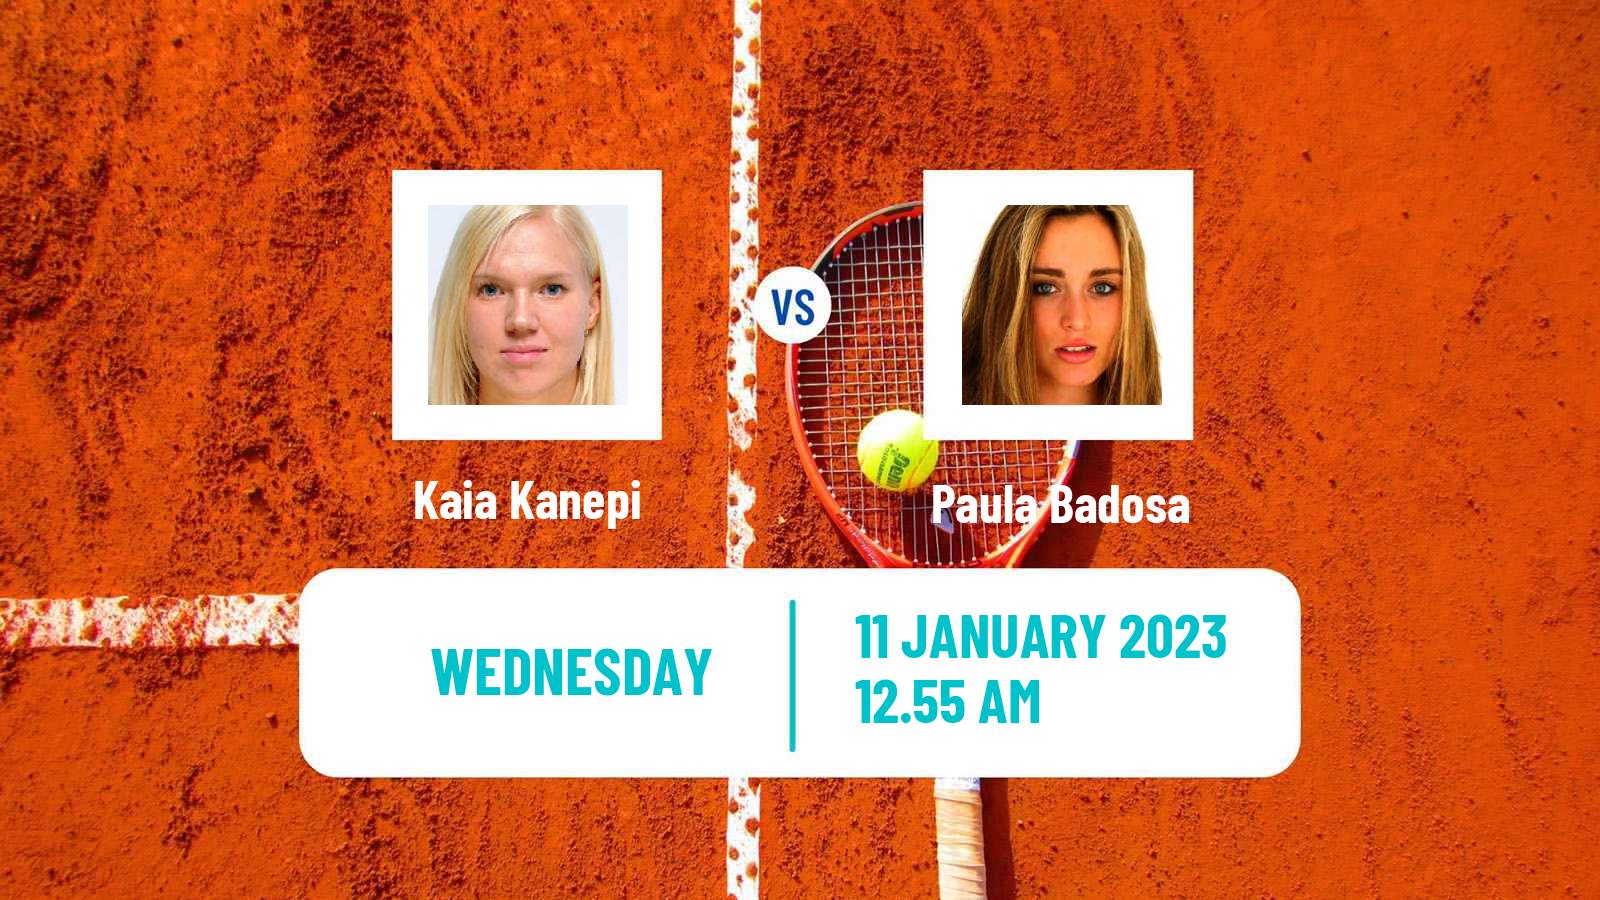 Tennis WTA Adelaide 2 Kaia Kanepi - Paula Badosa